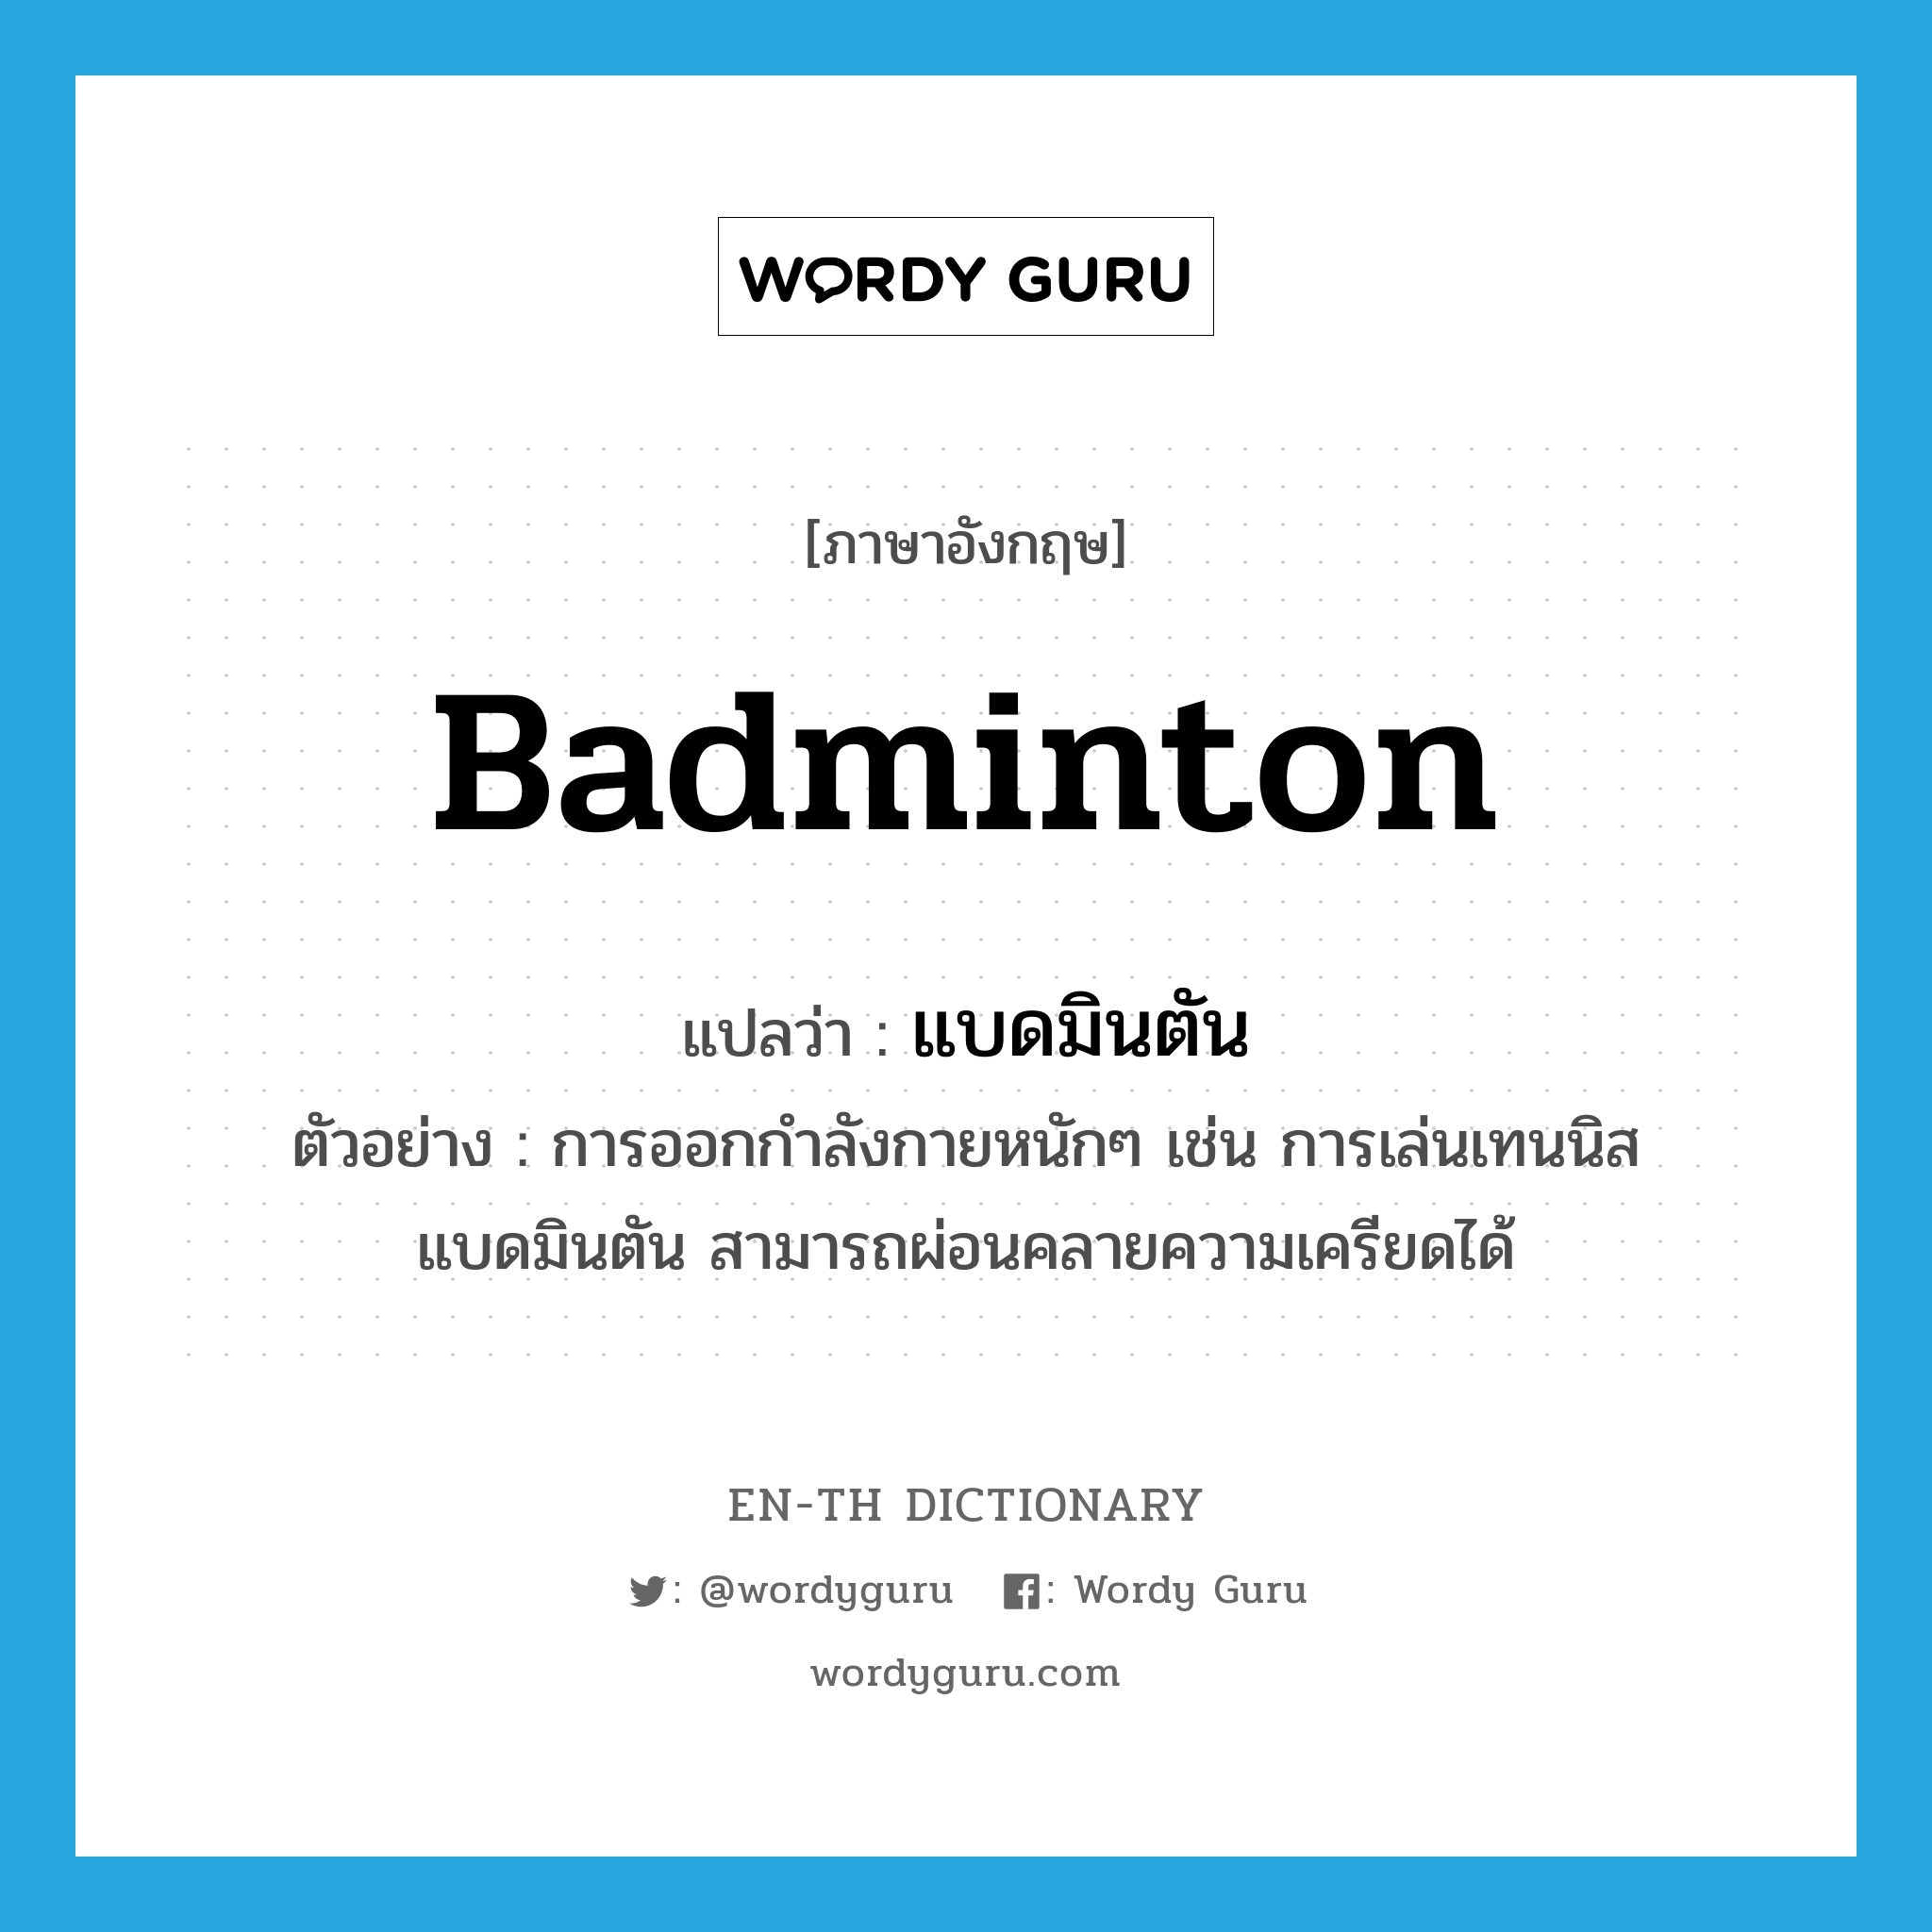 แบดมินตัน ภาษาอังกฤษ?, คำศัพท์ภาษาอังกฤษ แบดมินตัน แปลว่า badminton ประเภท N ตัวอย่าง การออกกำลังกายหนักๆ เช่น การเล่นเทนนิส แบดมินตัน สามารถผ่อนคลายความเครียดได้ หมวด N